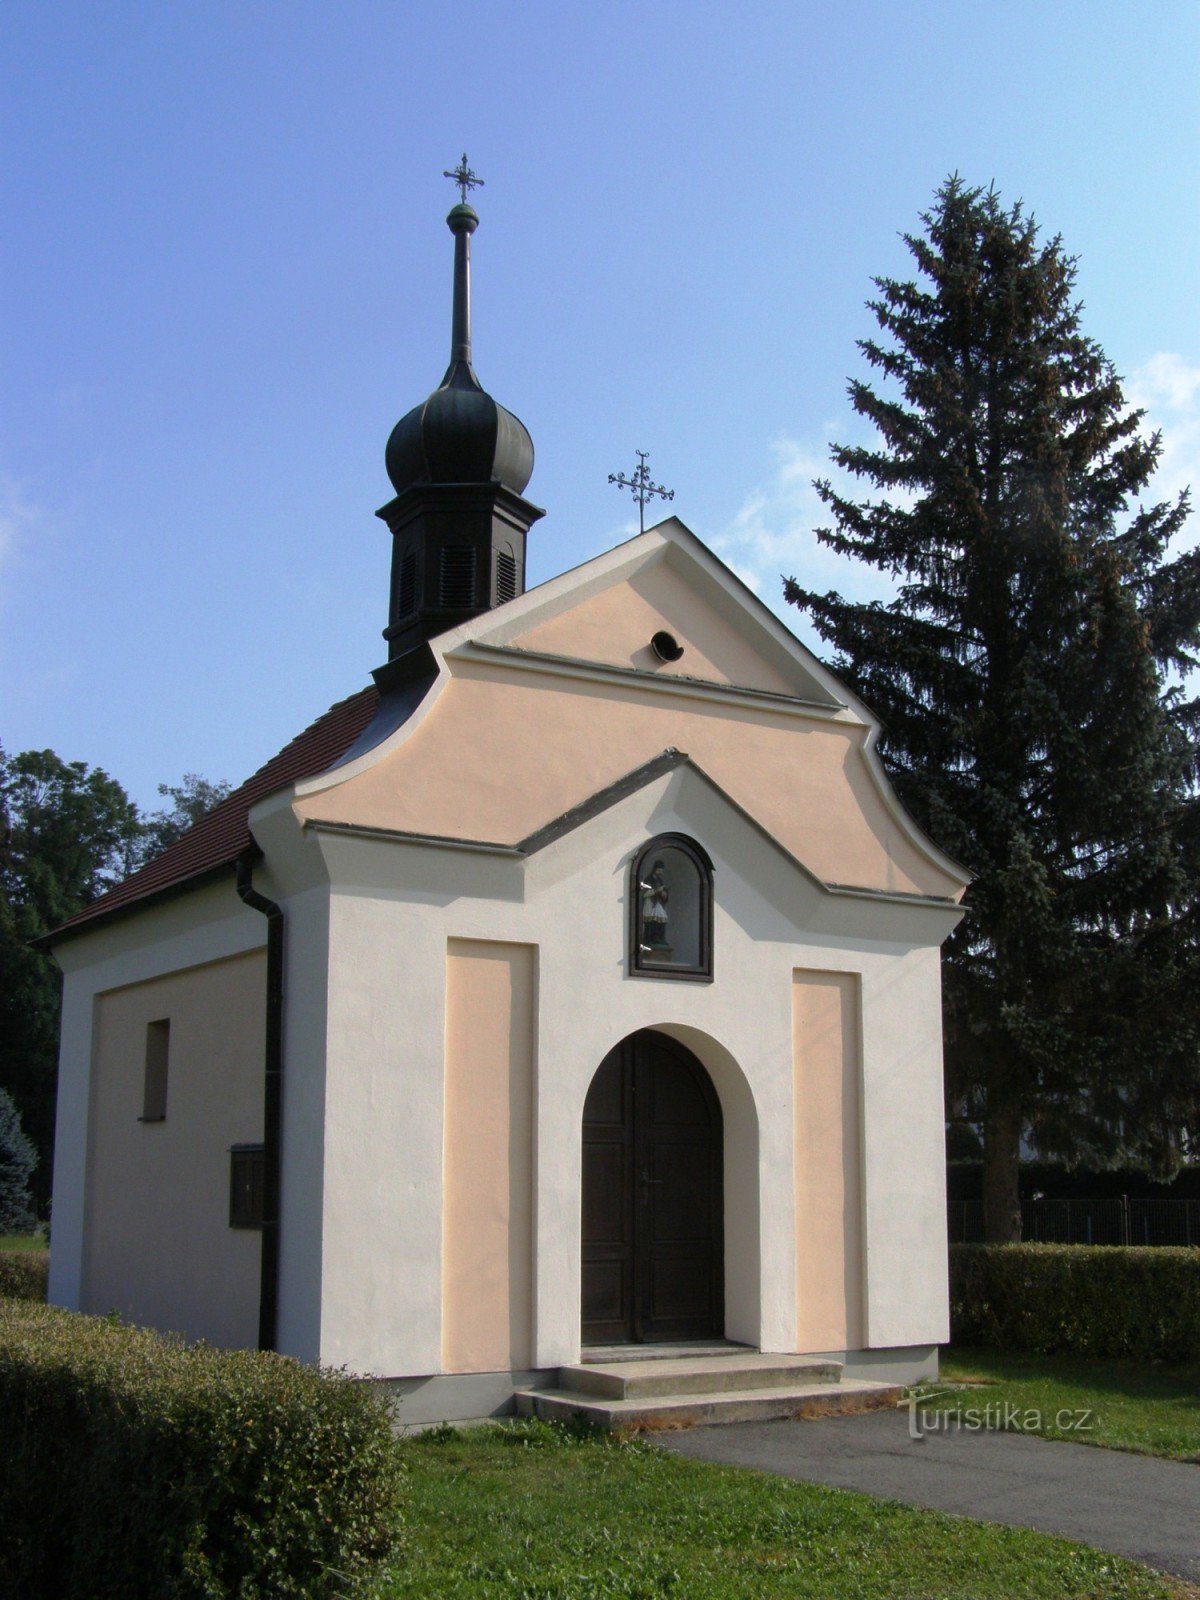 Poříčí nær Litomyšle - kapel St. Jan Nepomucký